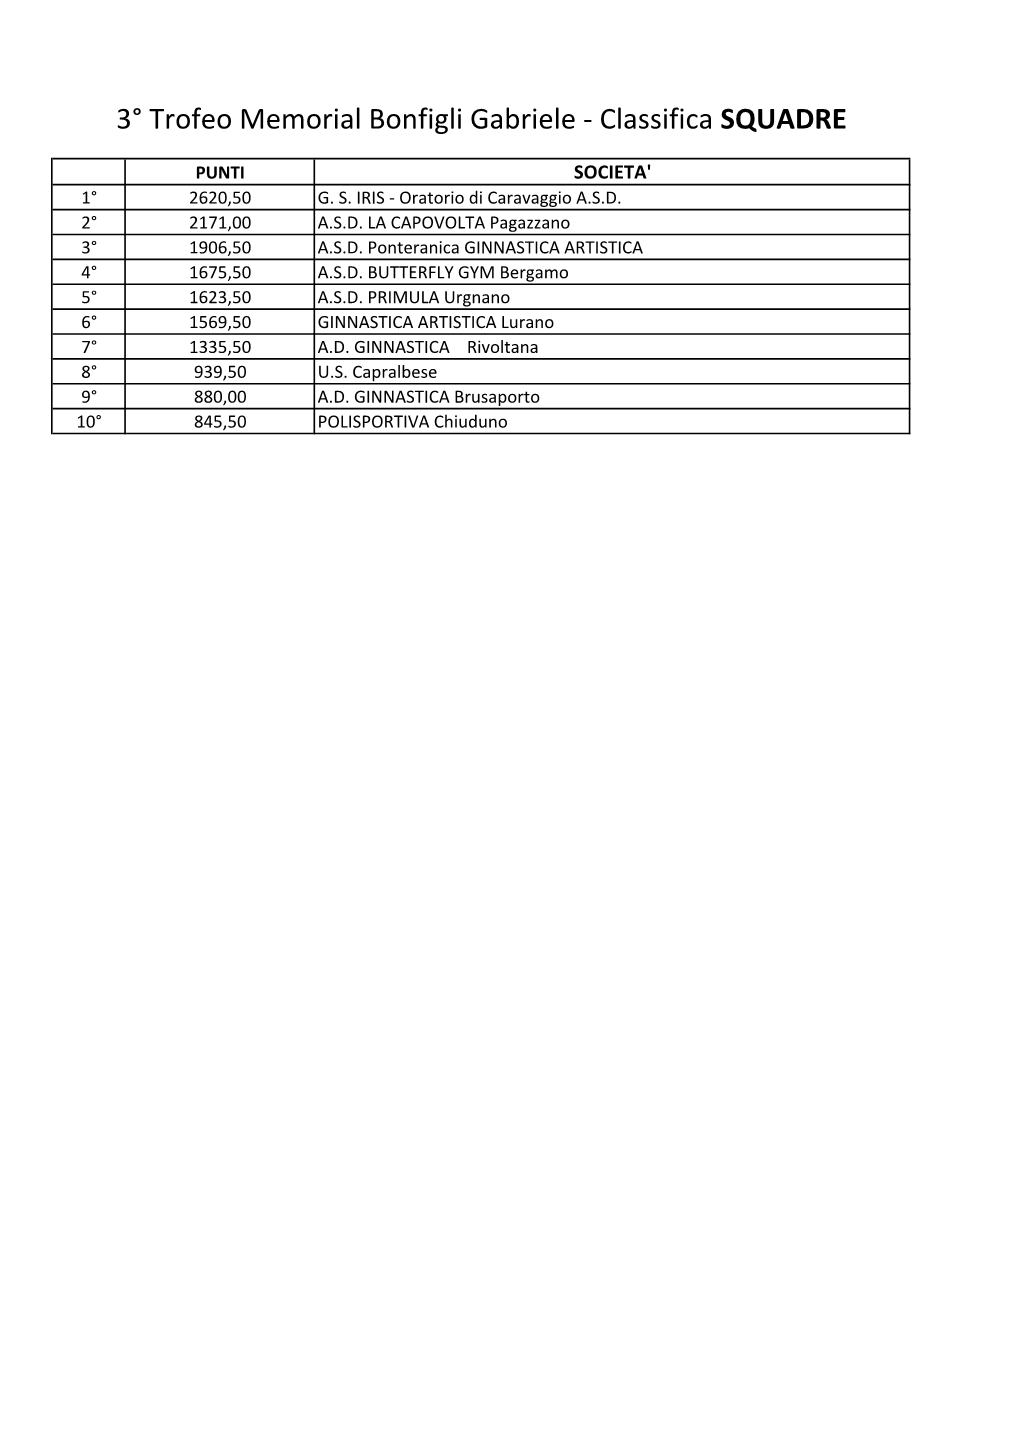 Classifiche 2013